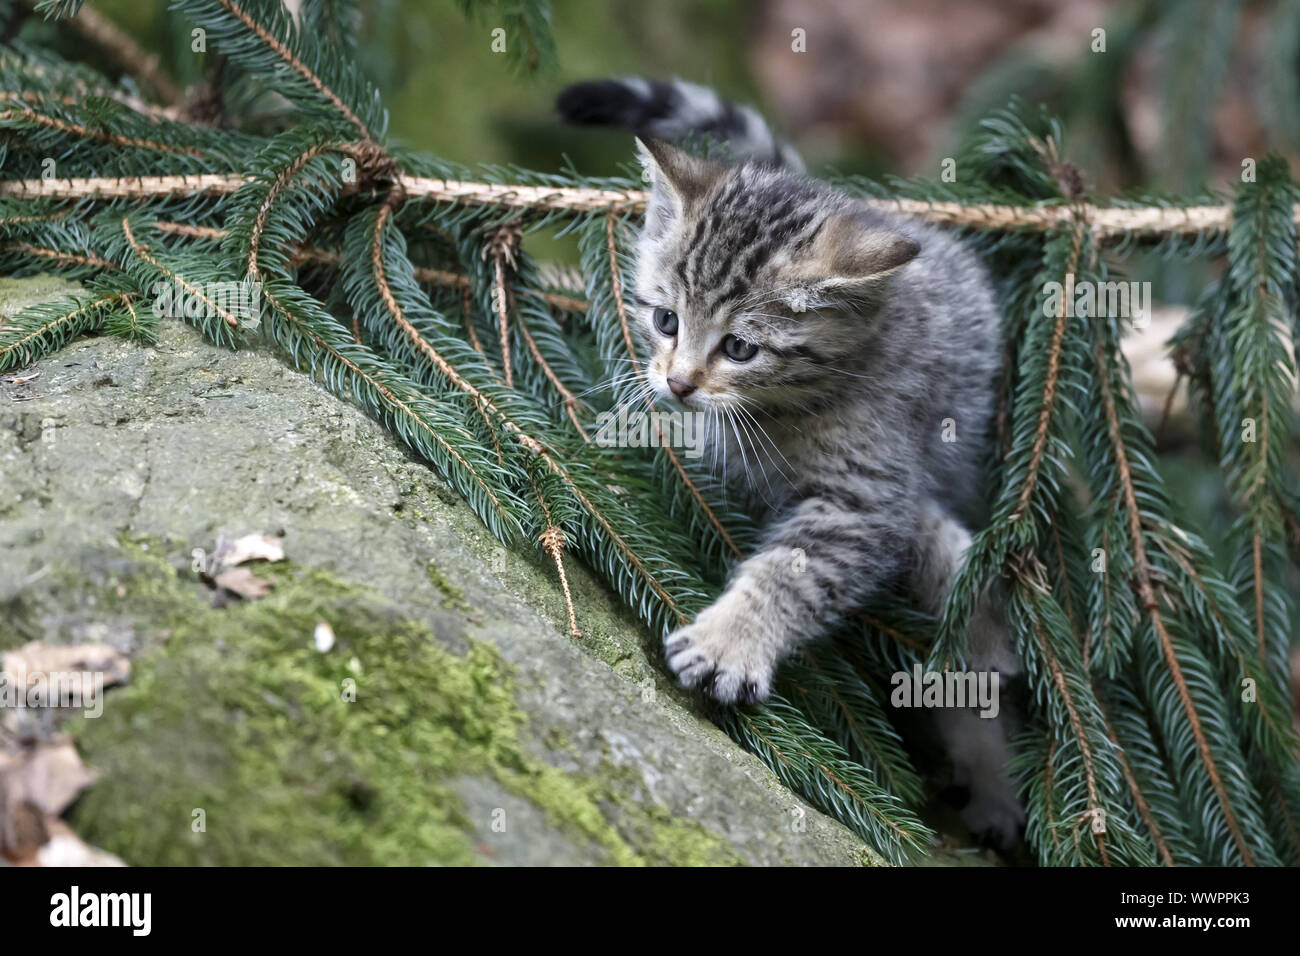 Wildcat, Common Wild Cat Stock Photo